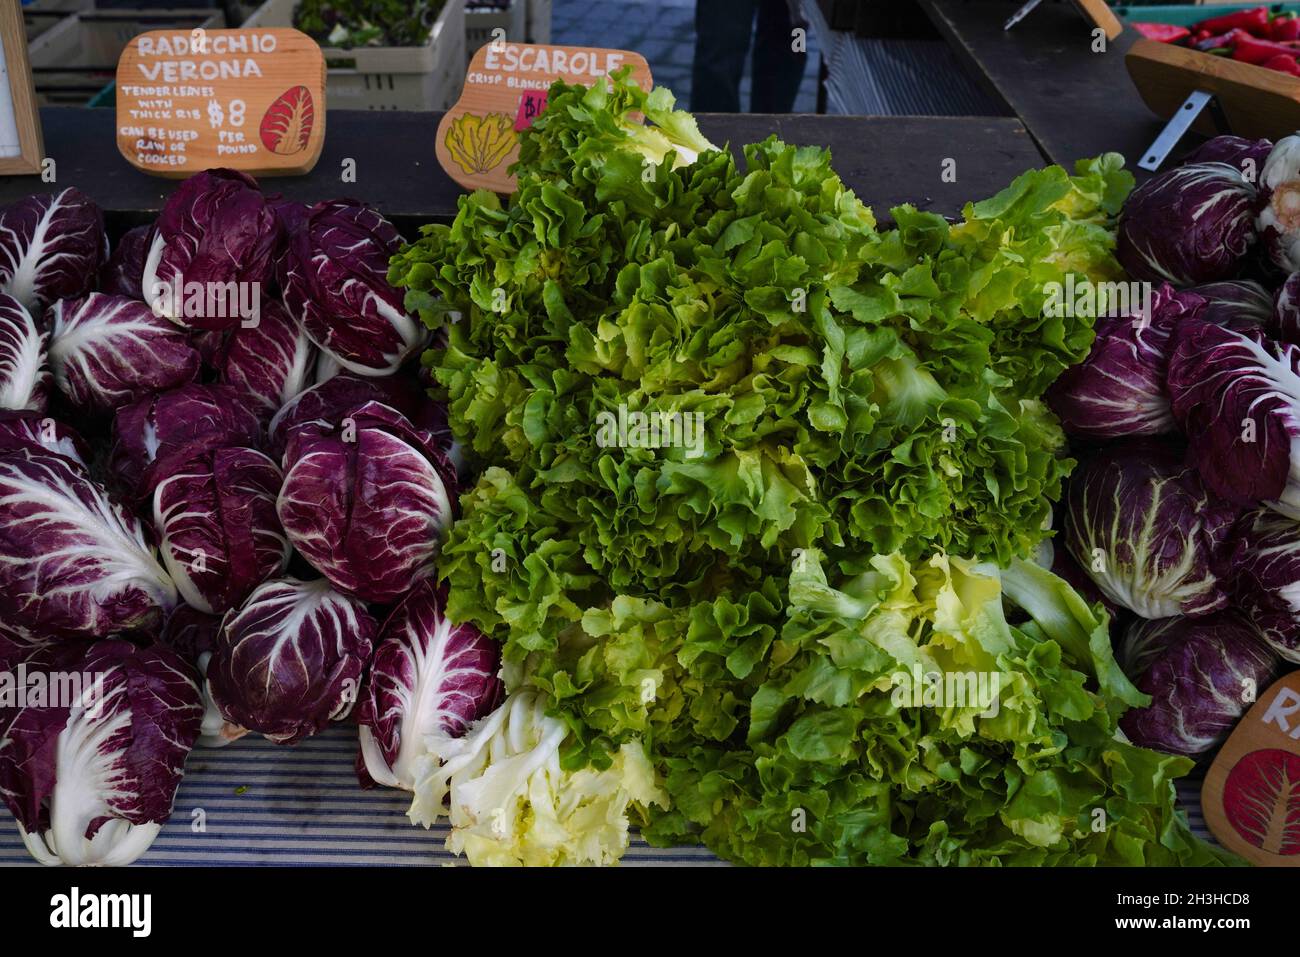 Abondance de produits frais cultivés localement offerts par les agriculteurs au marché Union Square de New York. Banque D'Images